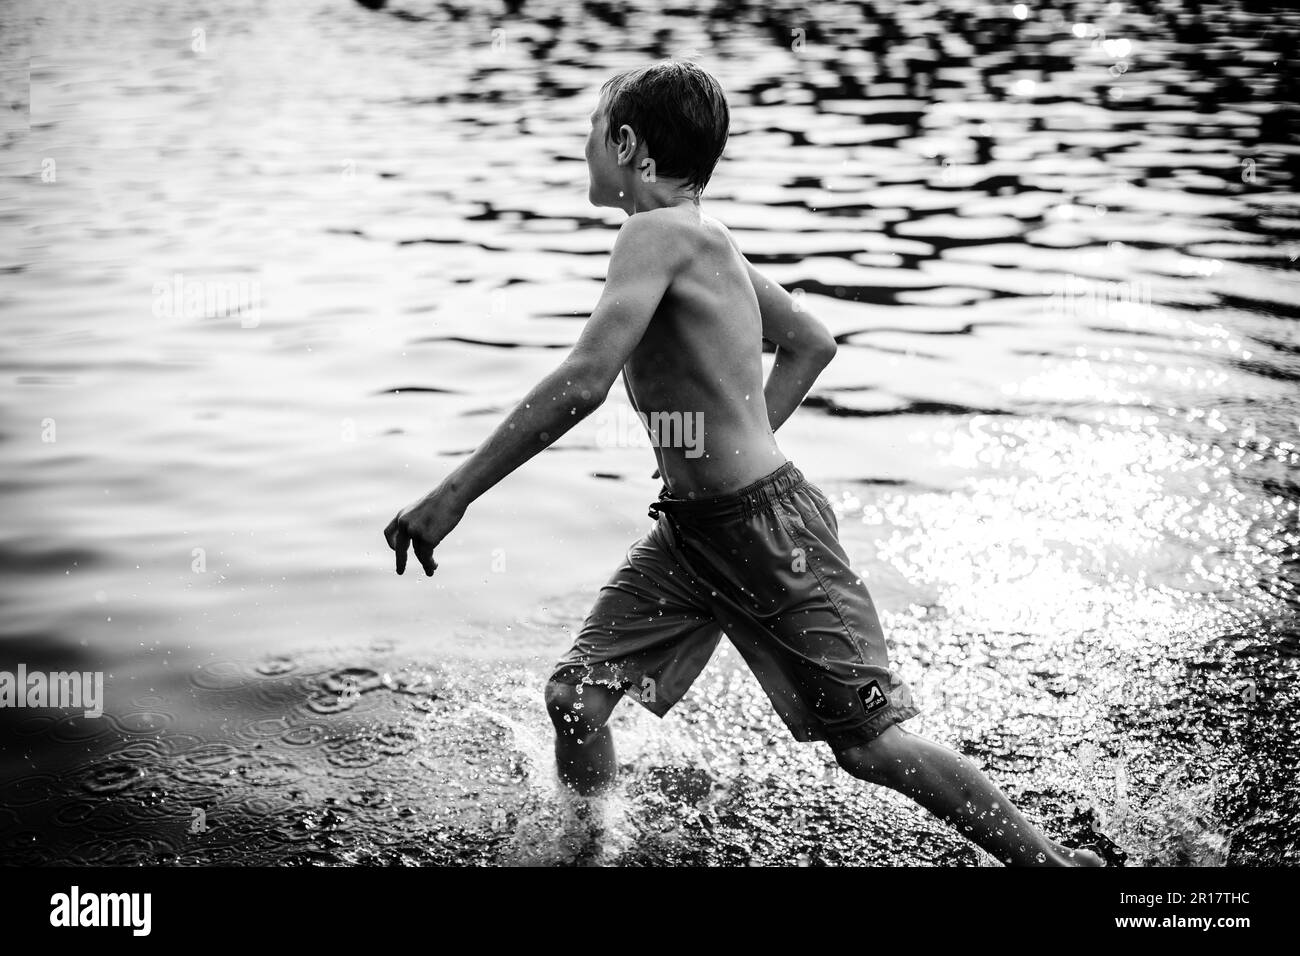 Boy splashing through lake during summer evening Stock Photo